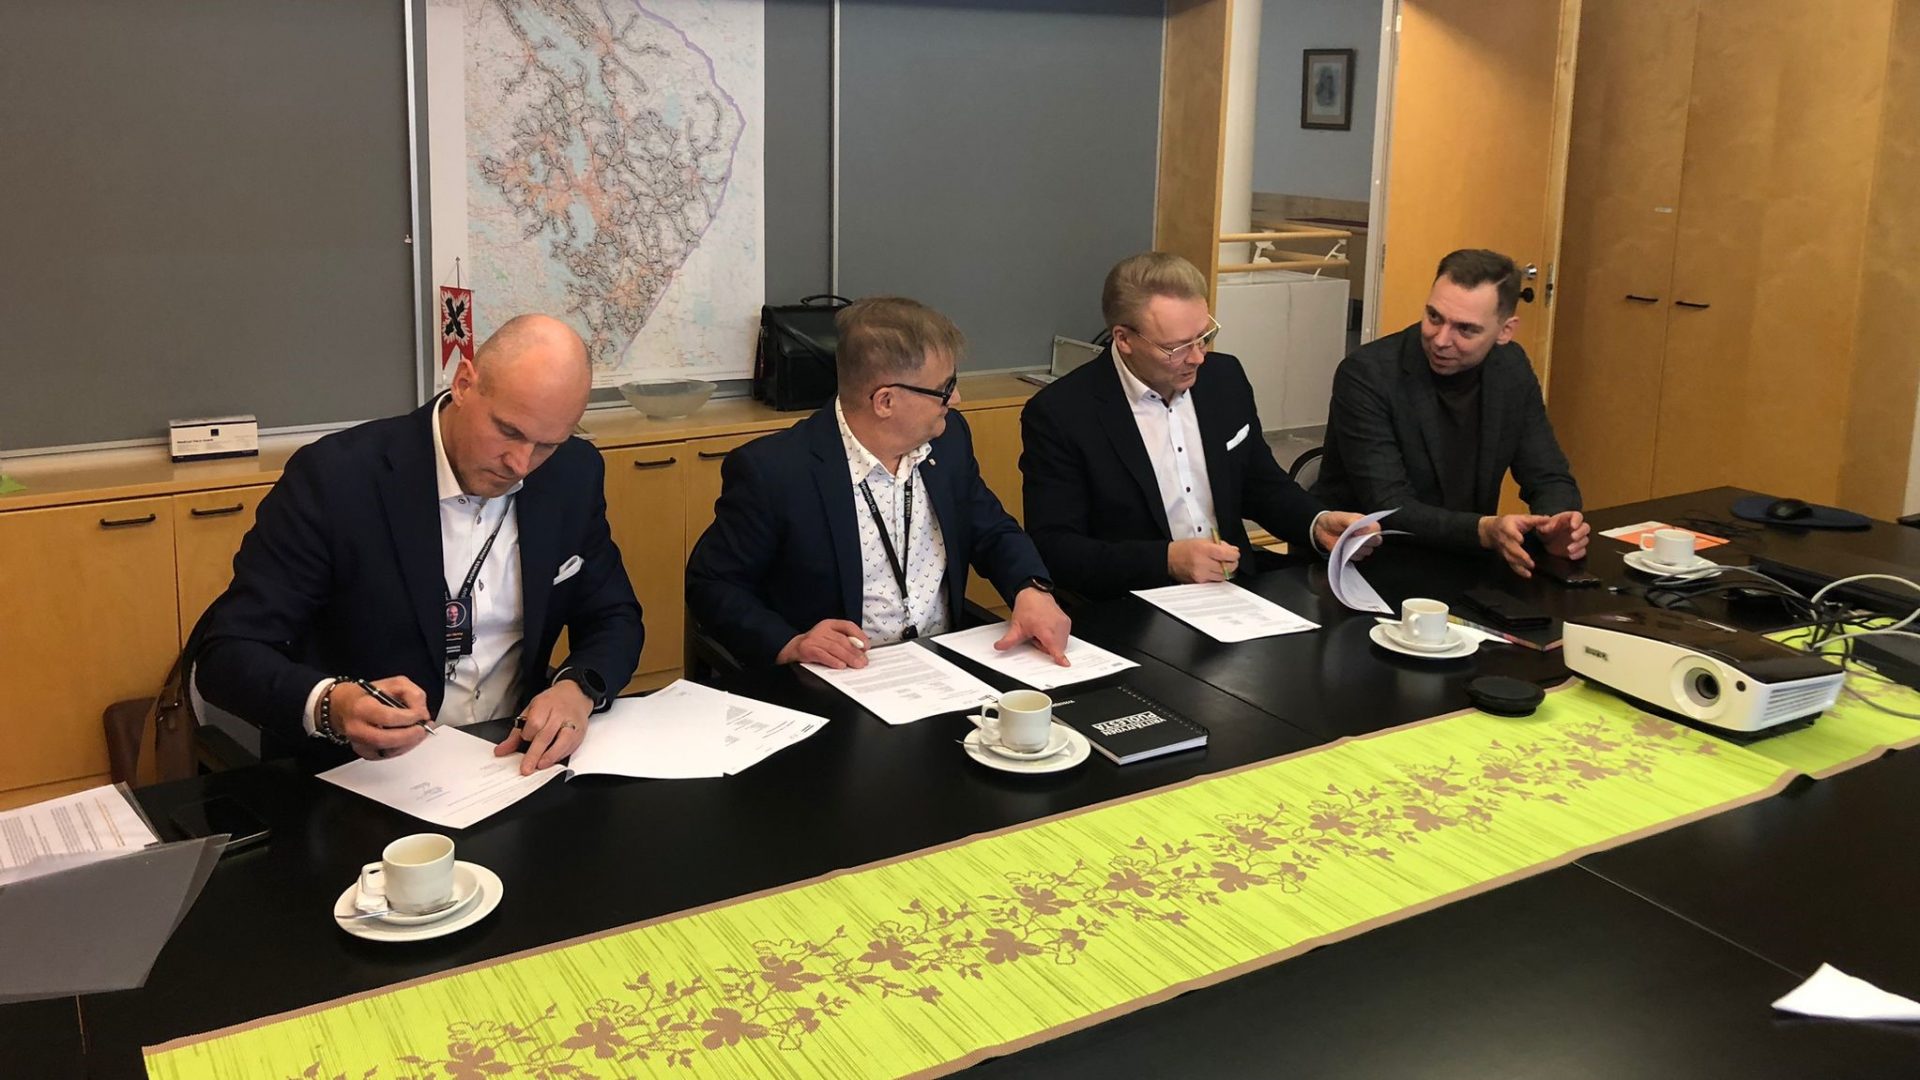 business_joensuu_service_agreement_with_Kitee_Rääkkylä_and_Tohmajärvi